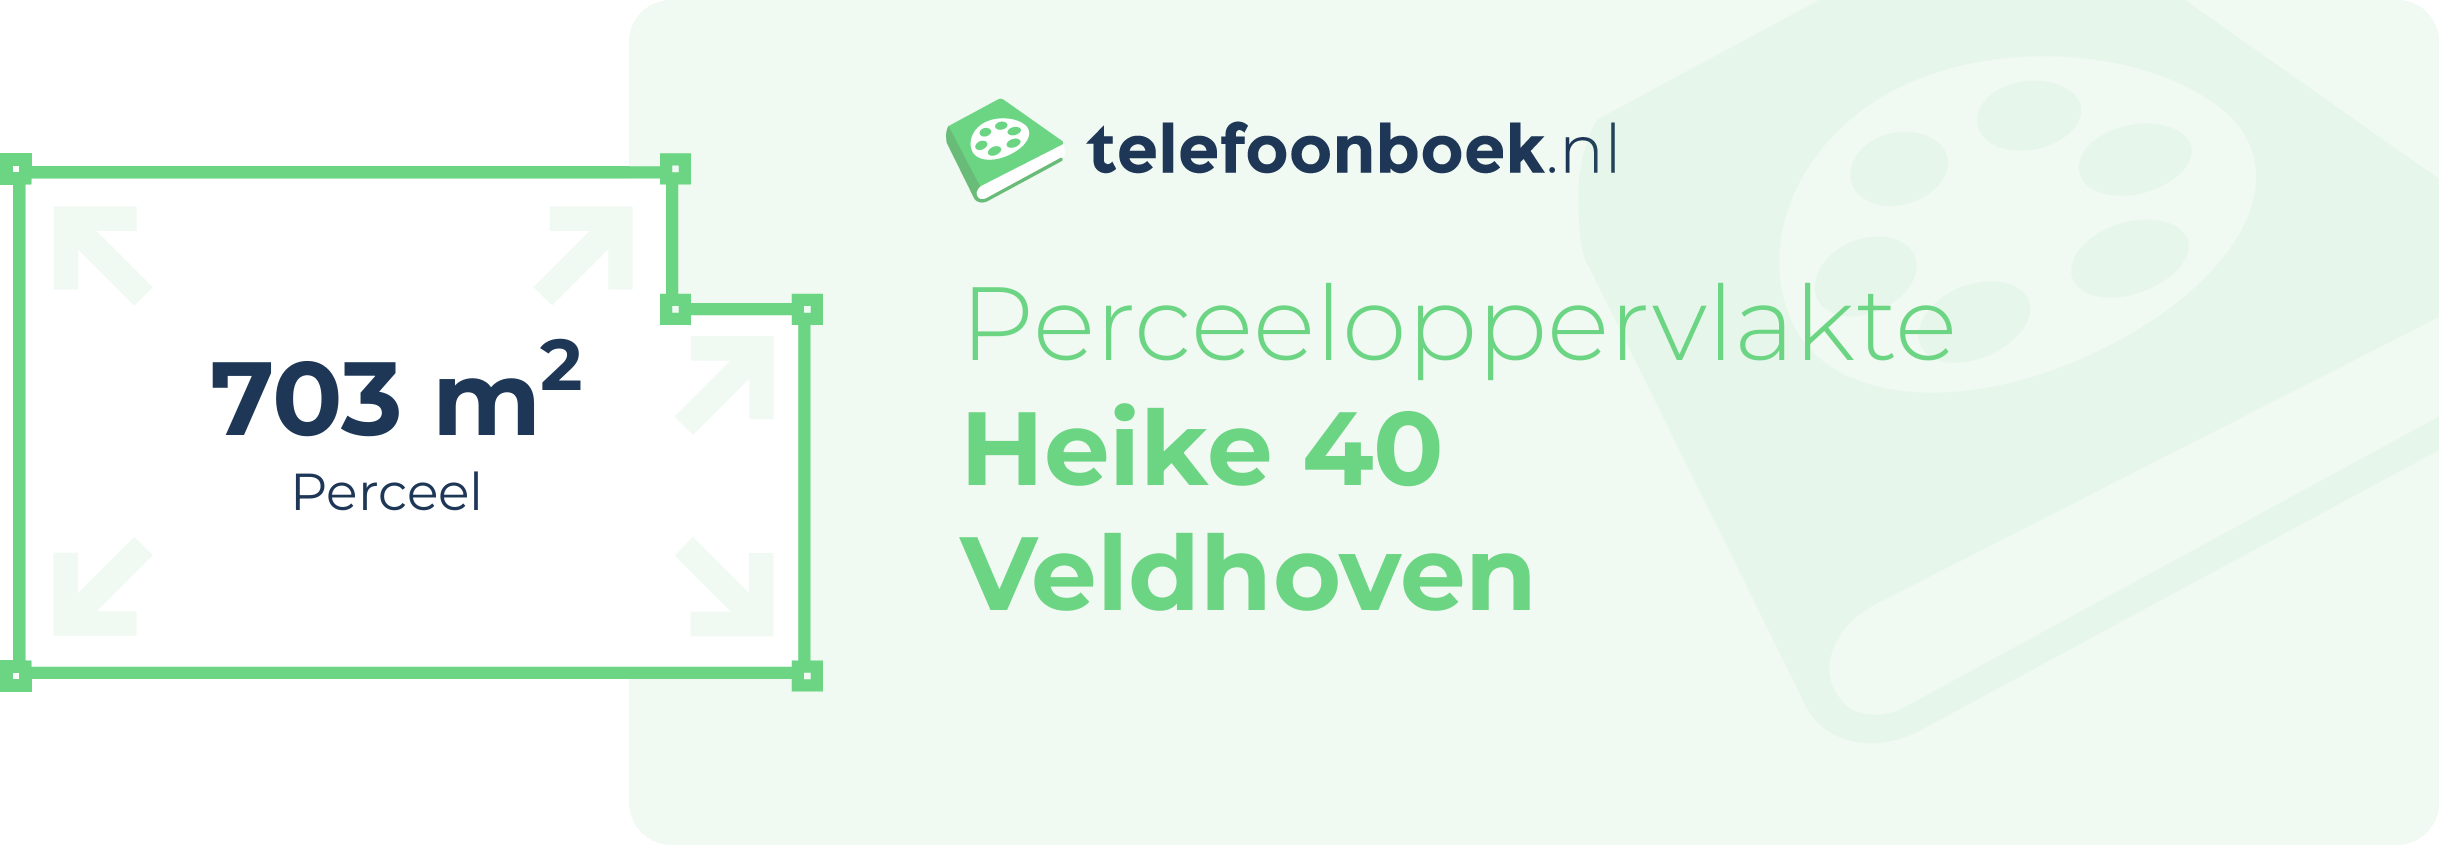 Perceeloppervlakte Heike 40 Veldhoven